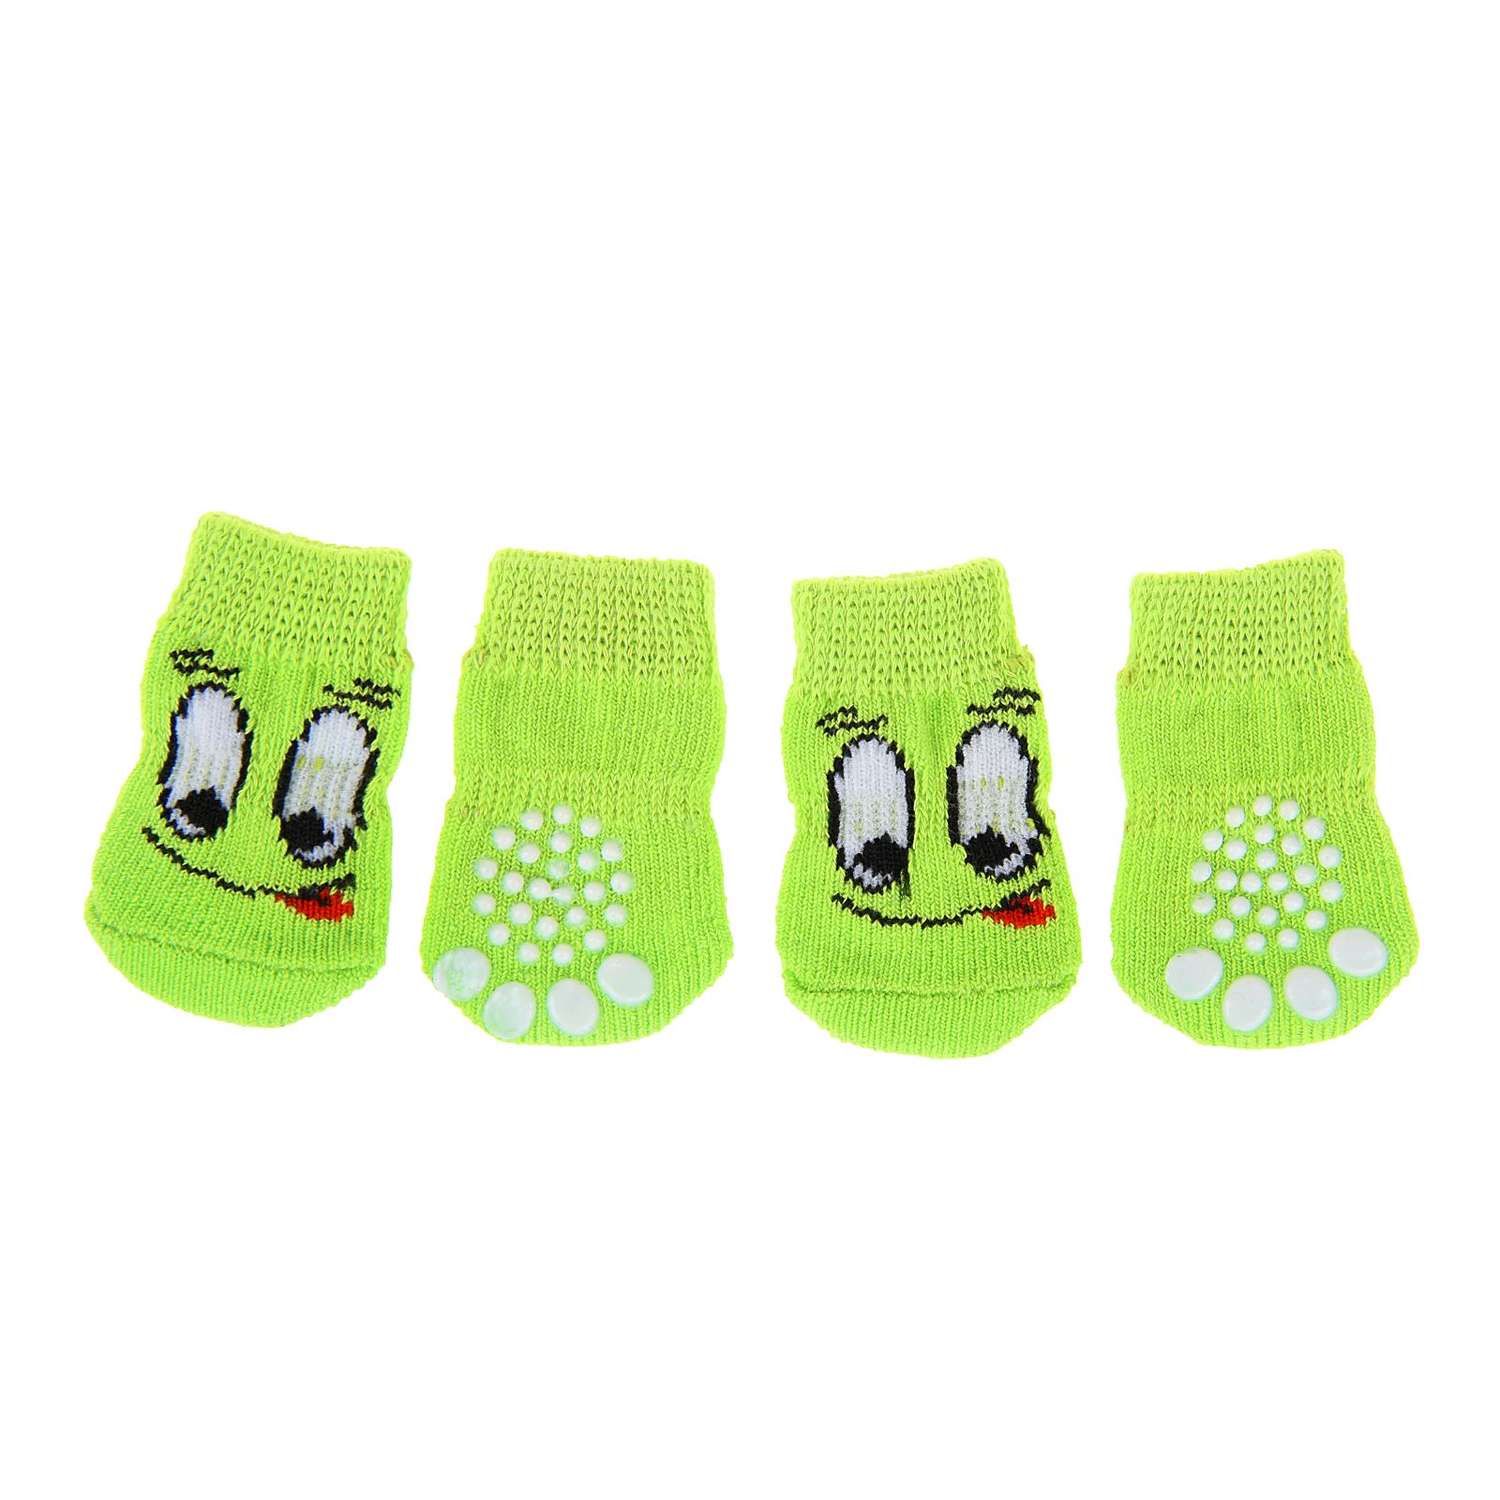 Носки Пижон нескользящие «Улыбка» размер S набор 4 шт. зеленые - фото 1